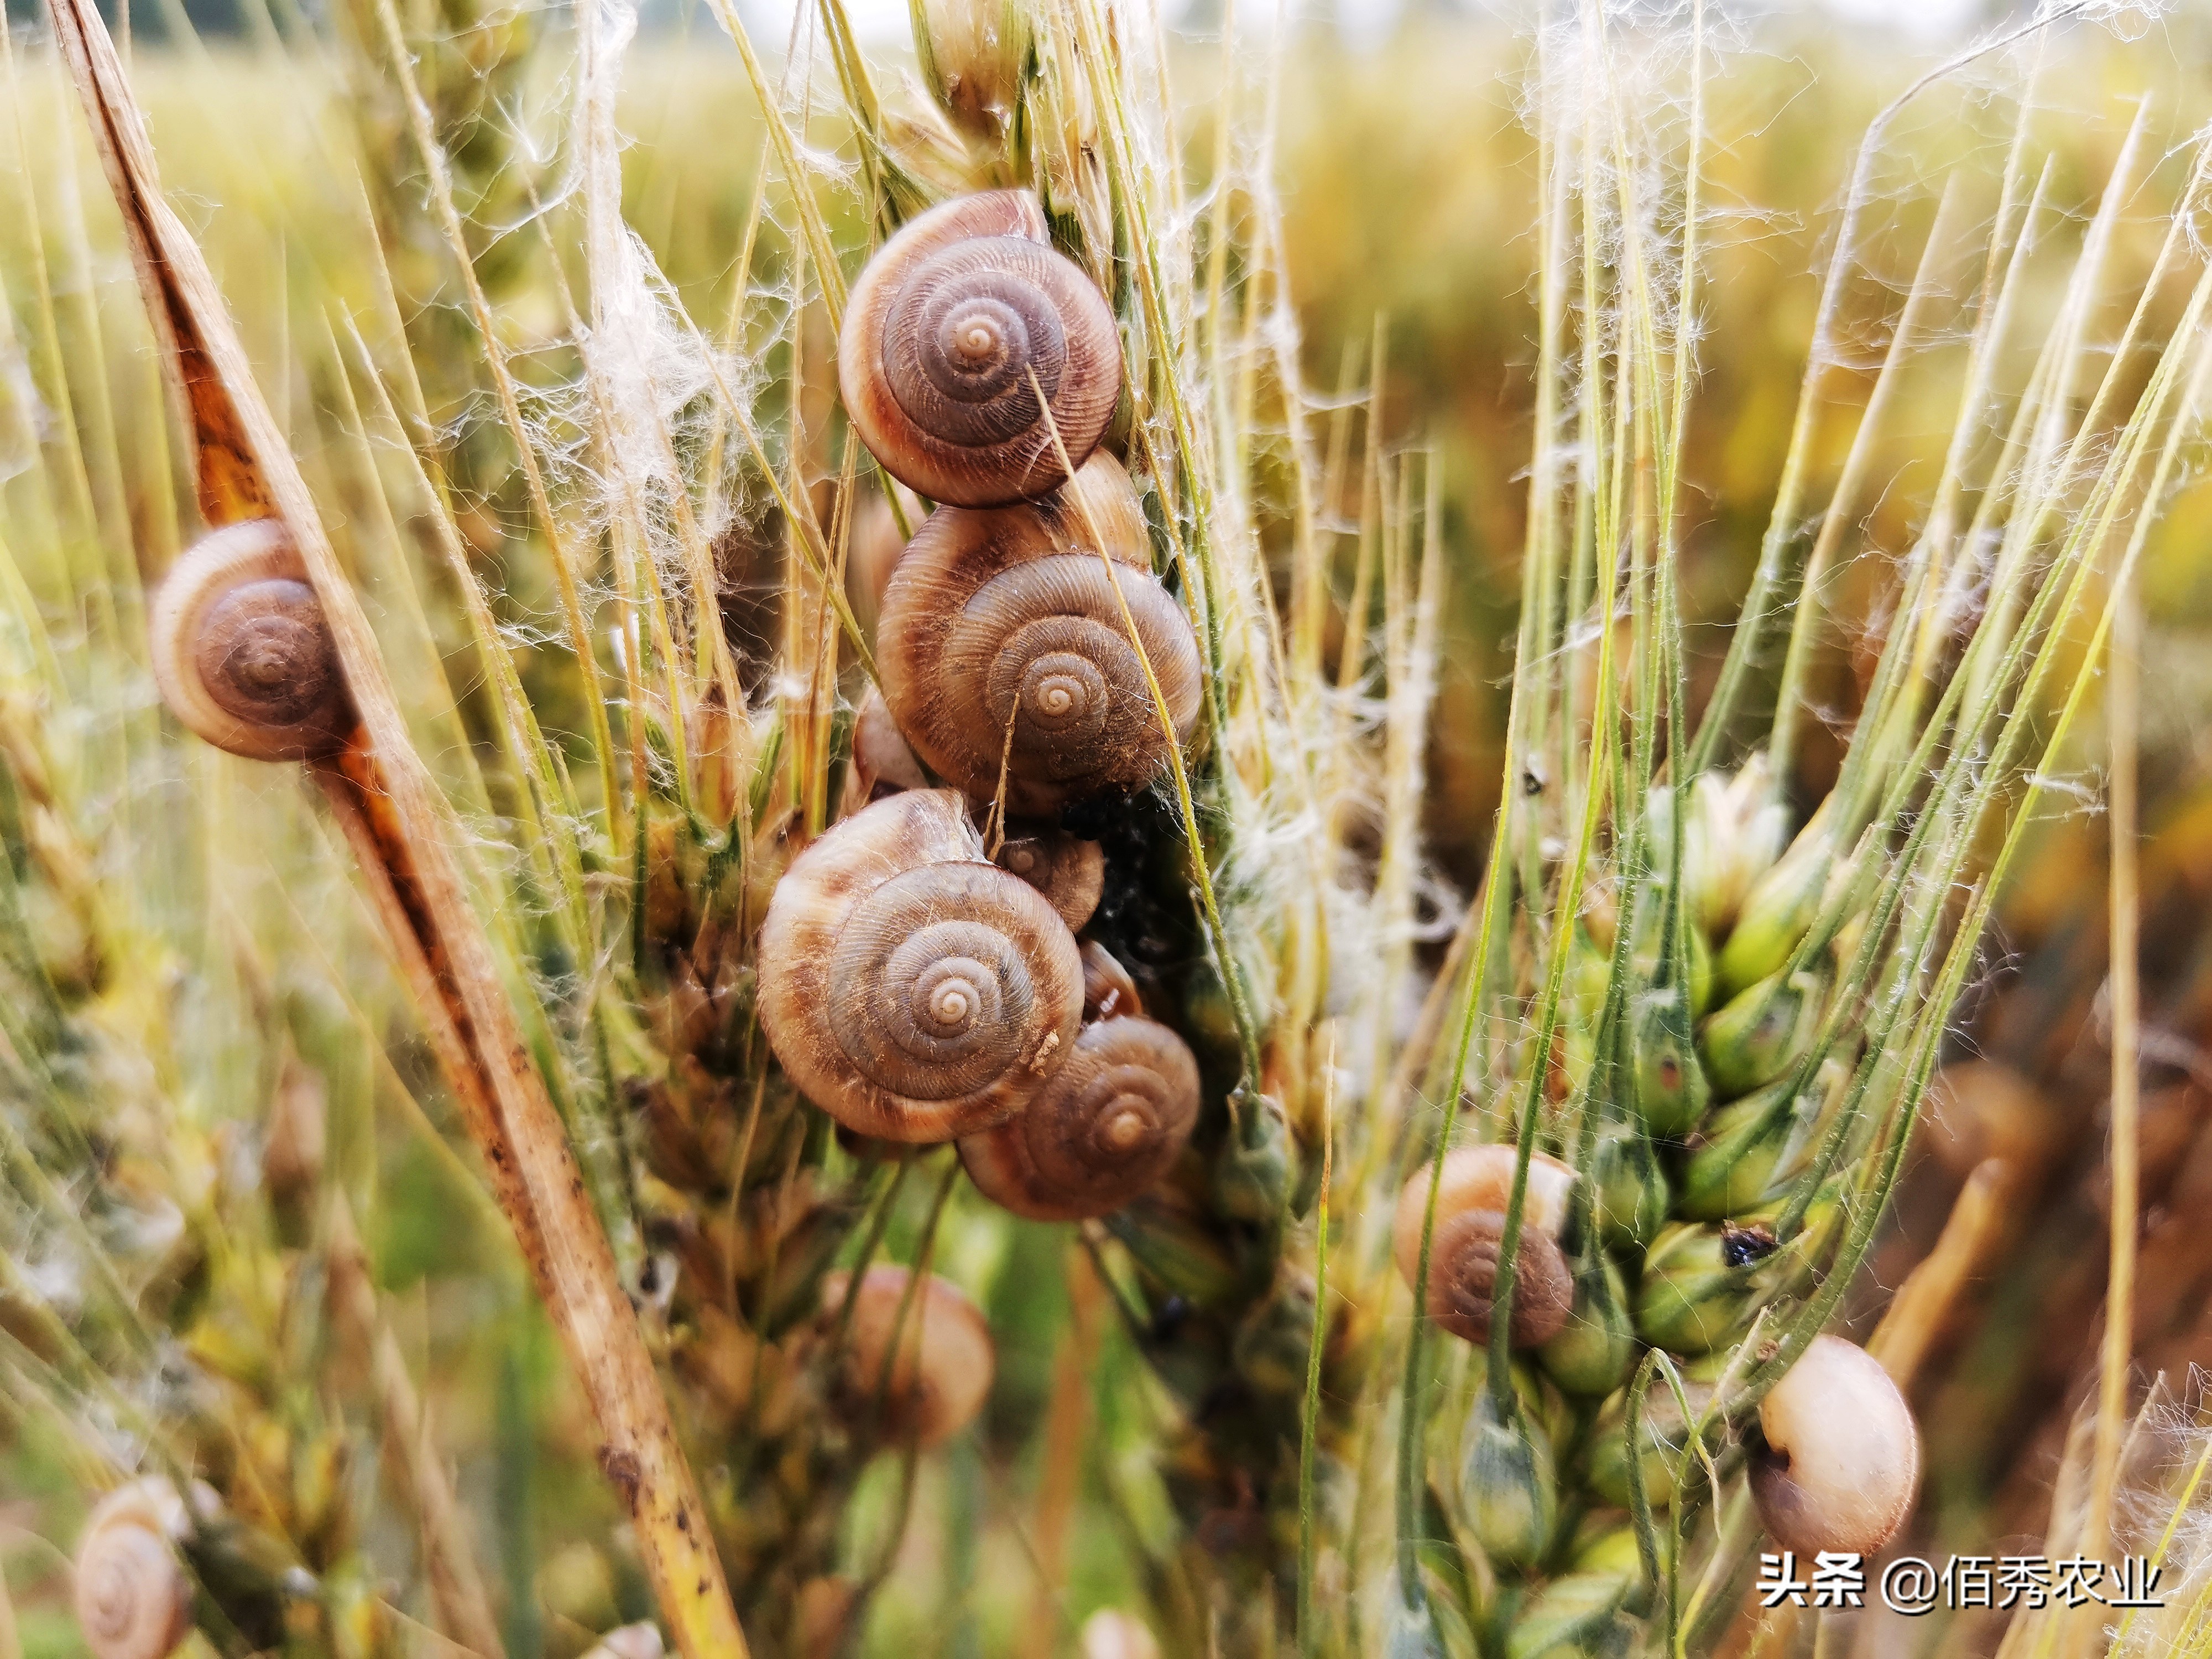 蜗牛在农业生产上是,蜗牛在农业生产上是害虫还是益虫